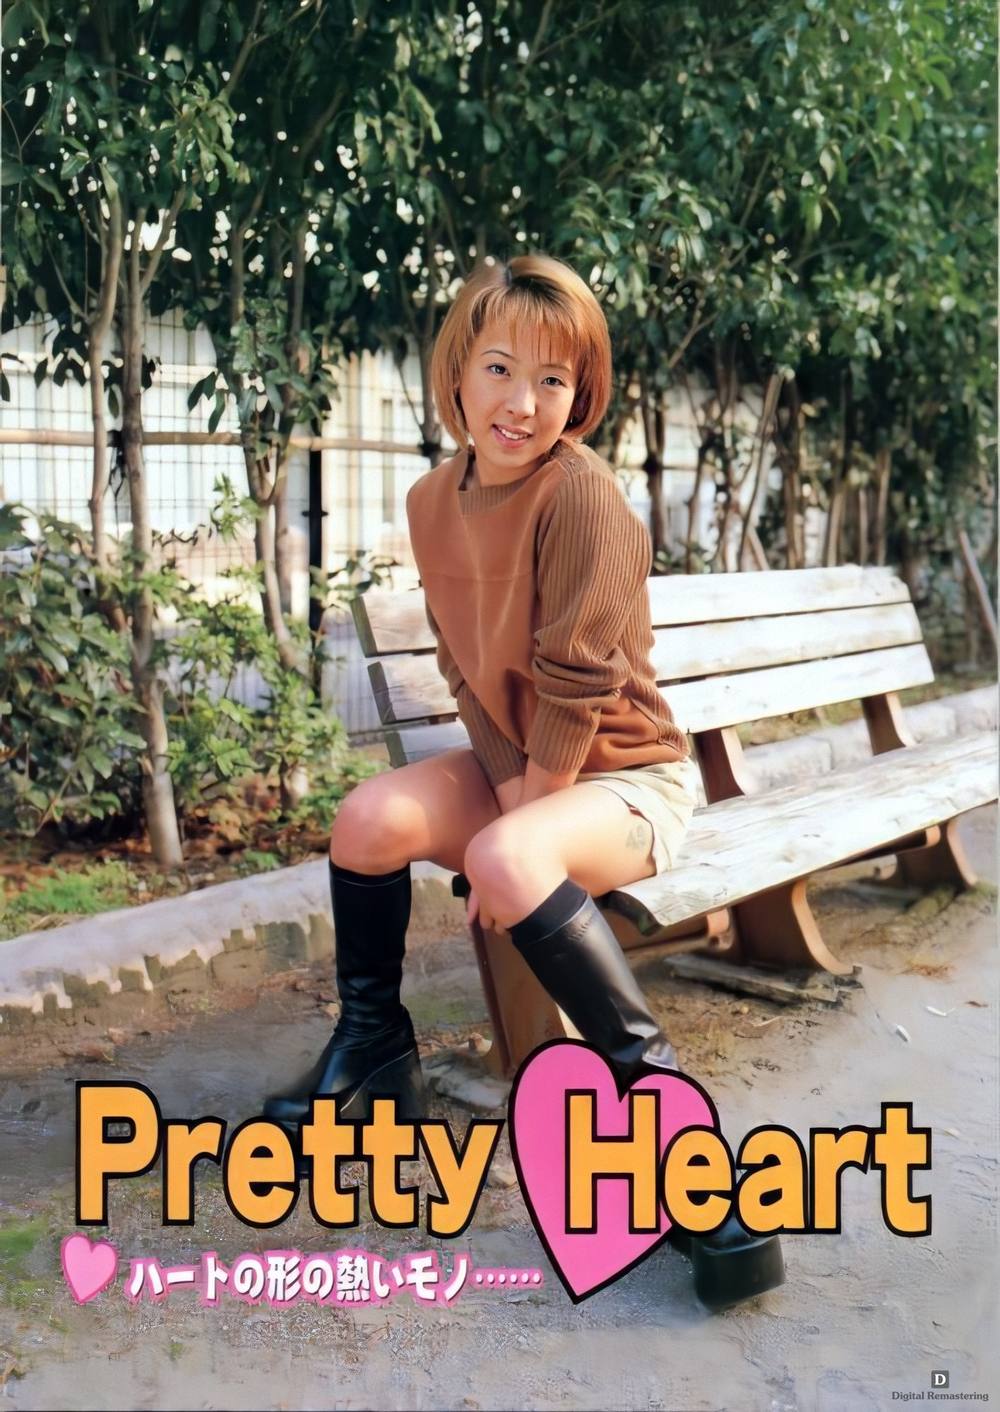 【無修正】懐かしのUrabon デジタルリマスター版【Pretty Heart】52枚 zipあり